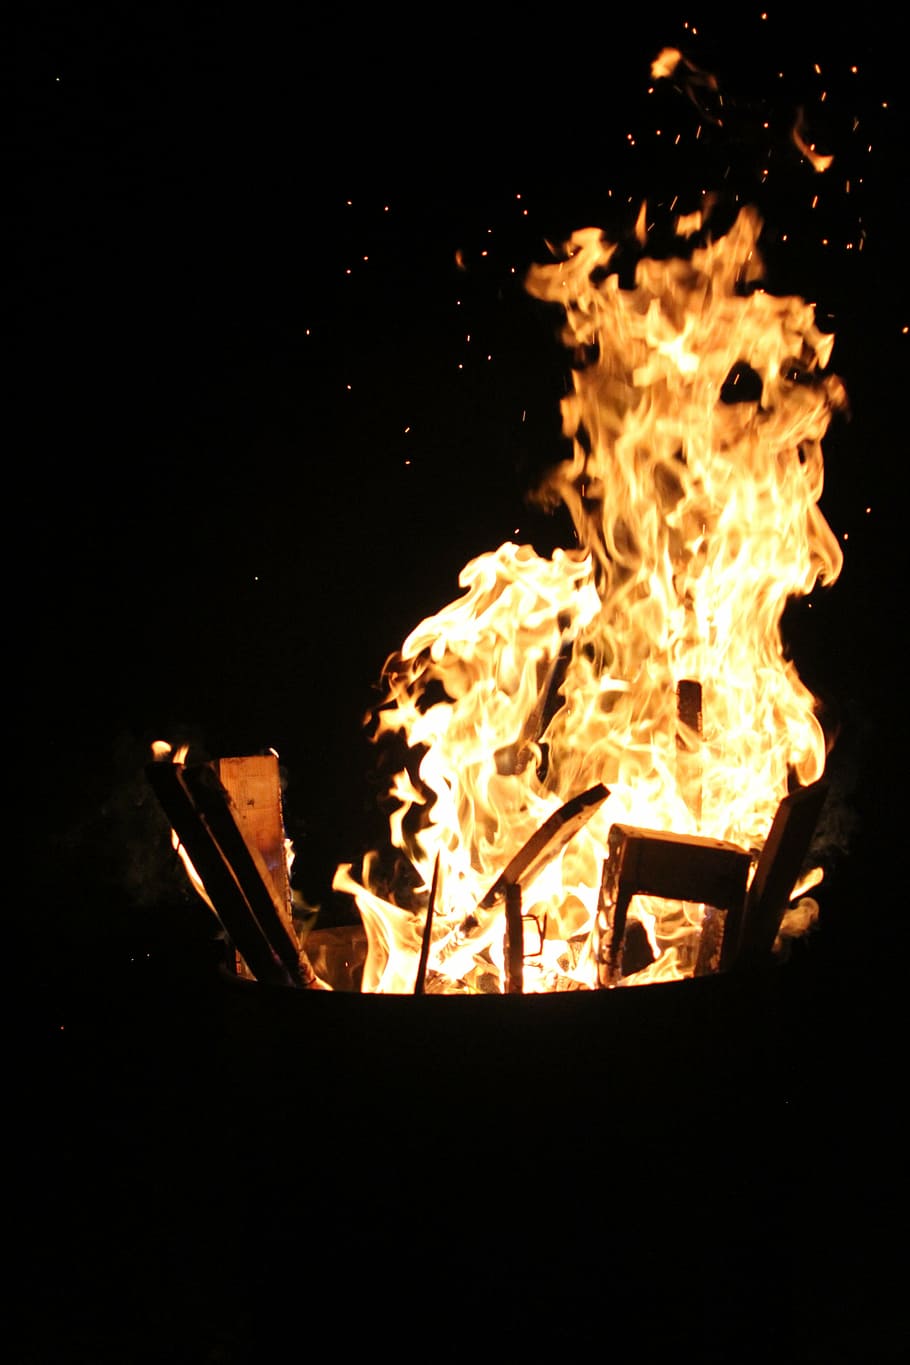 Hd Wallpaper Fire Hot Flame Heat Burn Embers Brand Wood Fire Fiery Wallpaper Flare